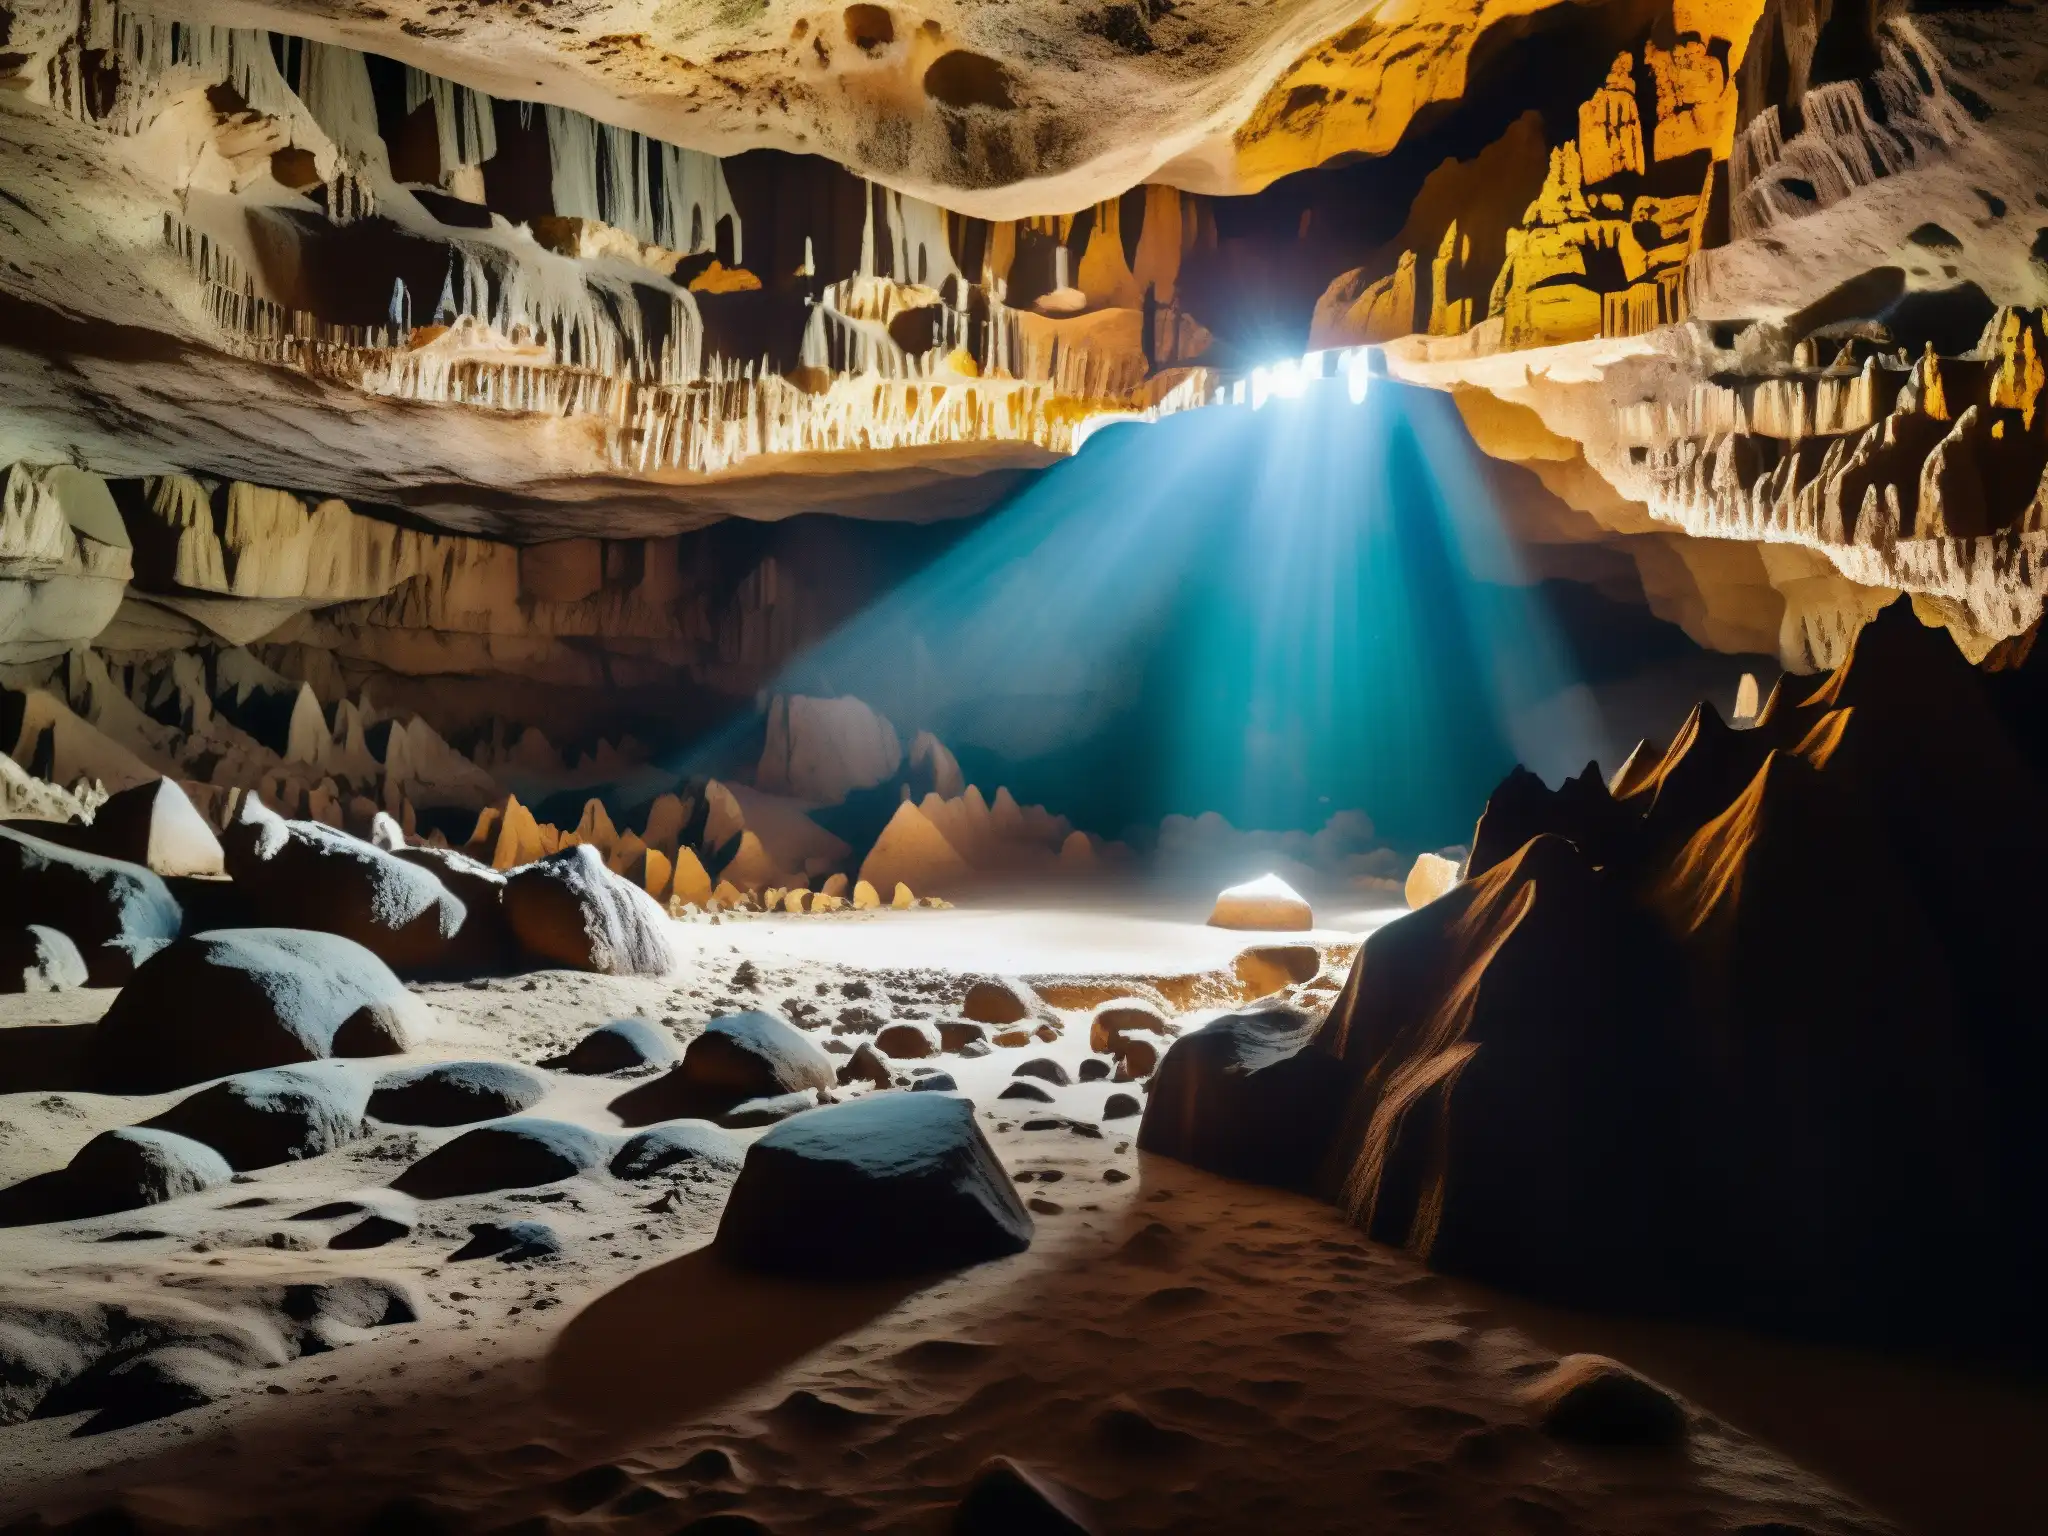 Tesoro espectral en la cueva Son Bhandar: formaciones geológicas iluminadas crean una atmósfera misteriosa y ancestral